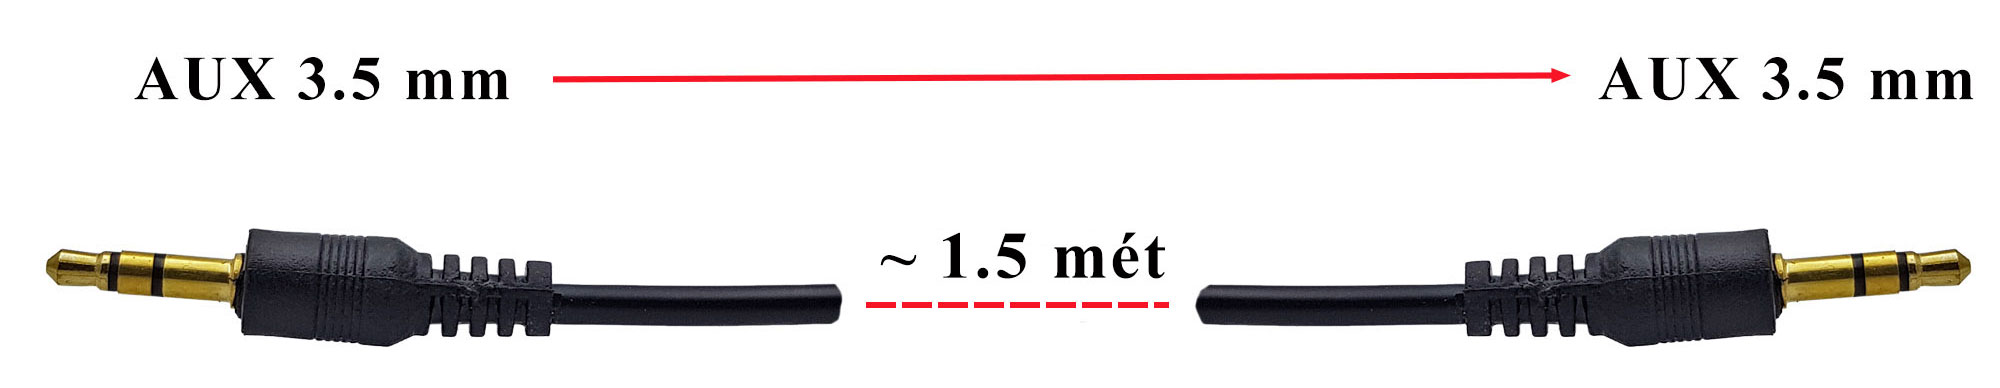 Kích thước Dây cáp âm thanh AUX 3.5mm dài 1.5 mét